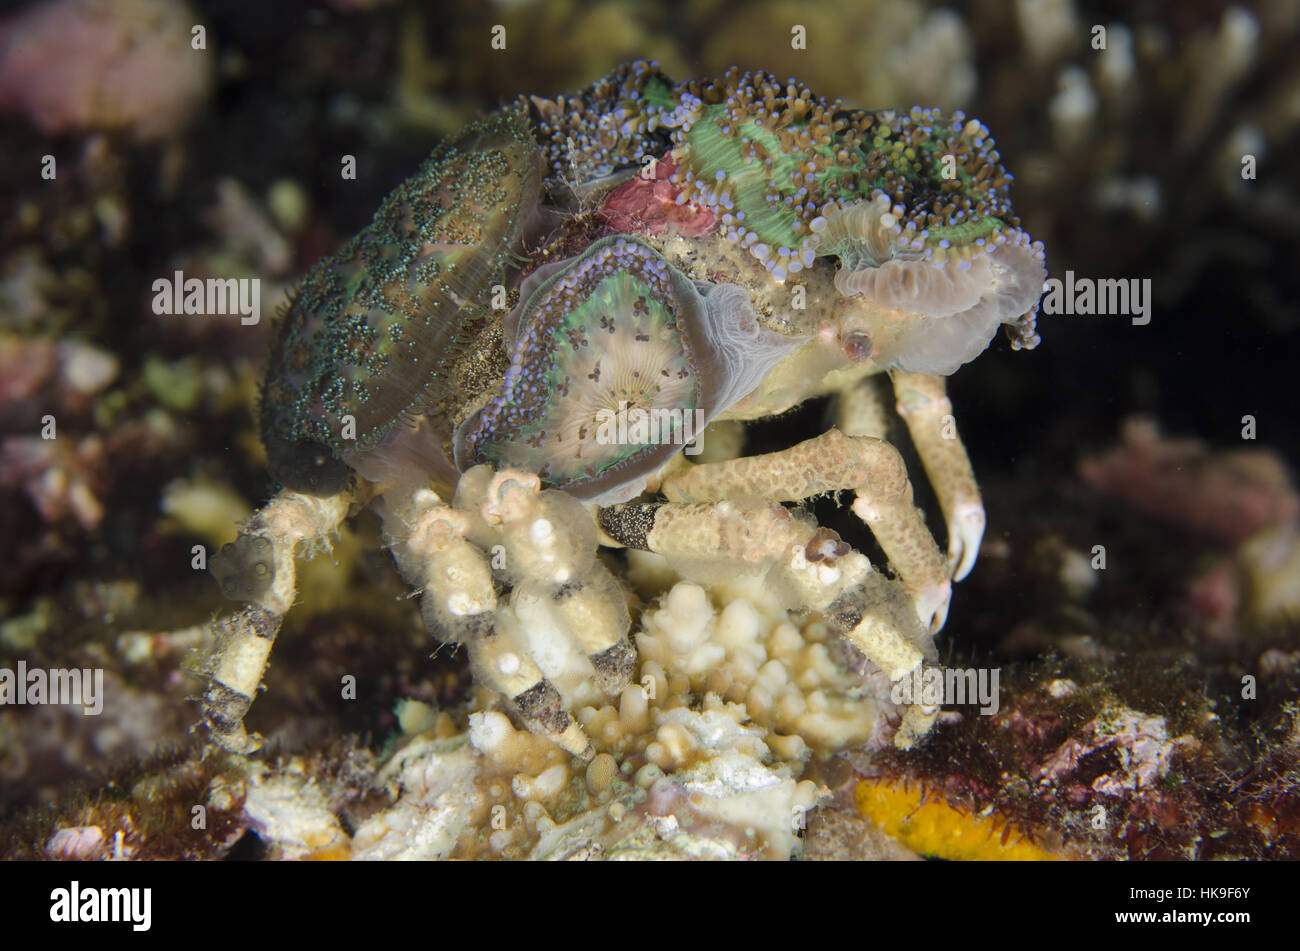 Decorator Crab - MariveneÂ´s Spider Crab Stock Photo - Image of spider,  crustacea: 49329018